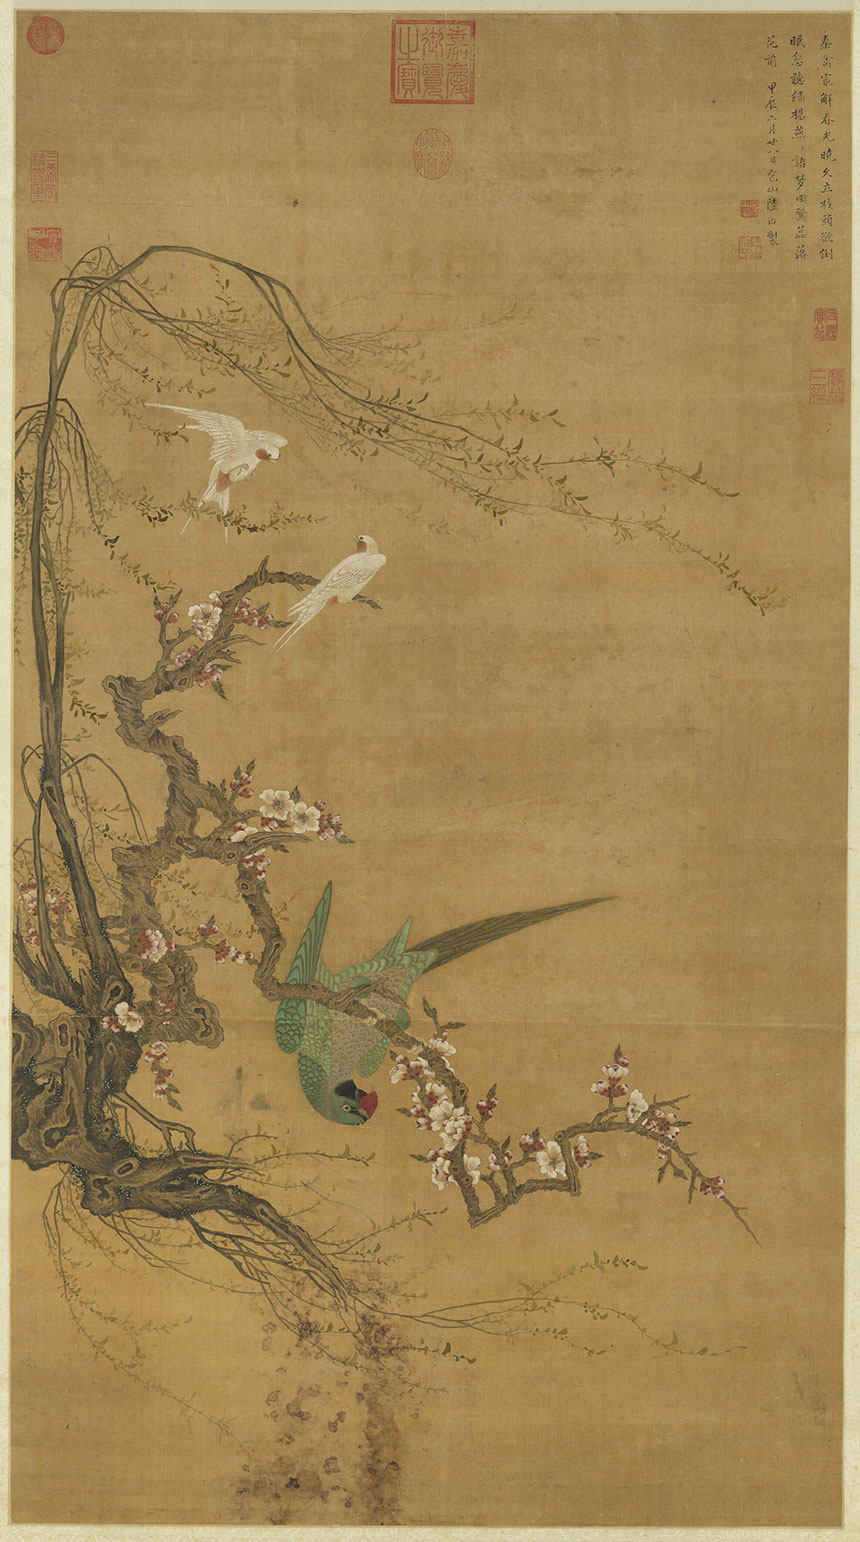 明·陆治《花鸟图》
绢本 立轴 设色 128x70.7厘米
台北故宫博物院藏